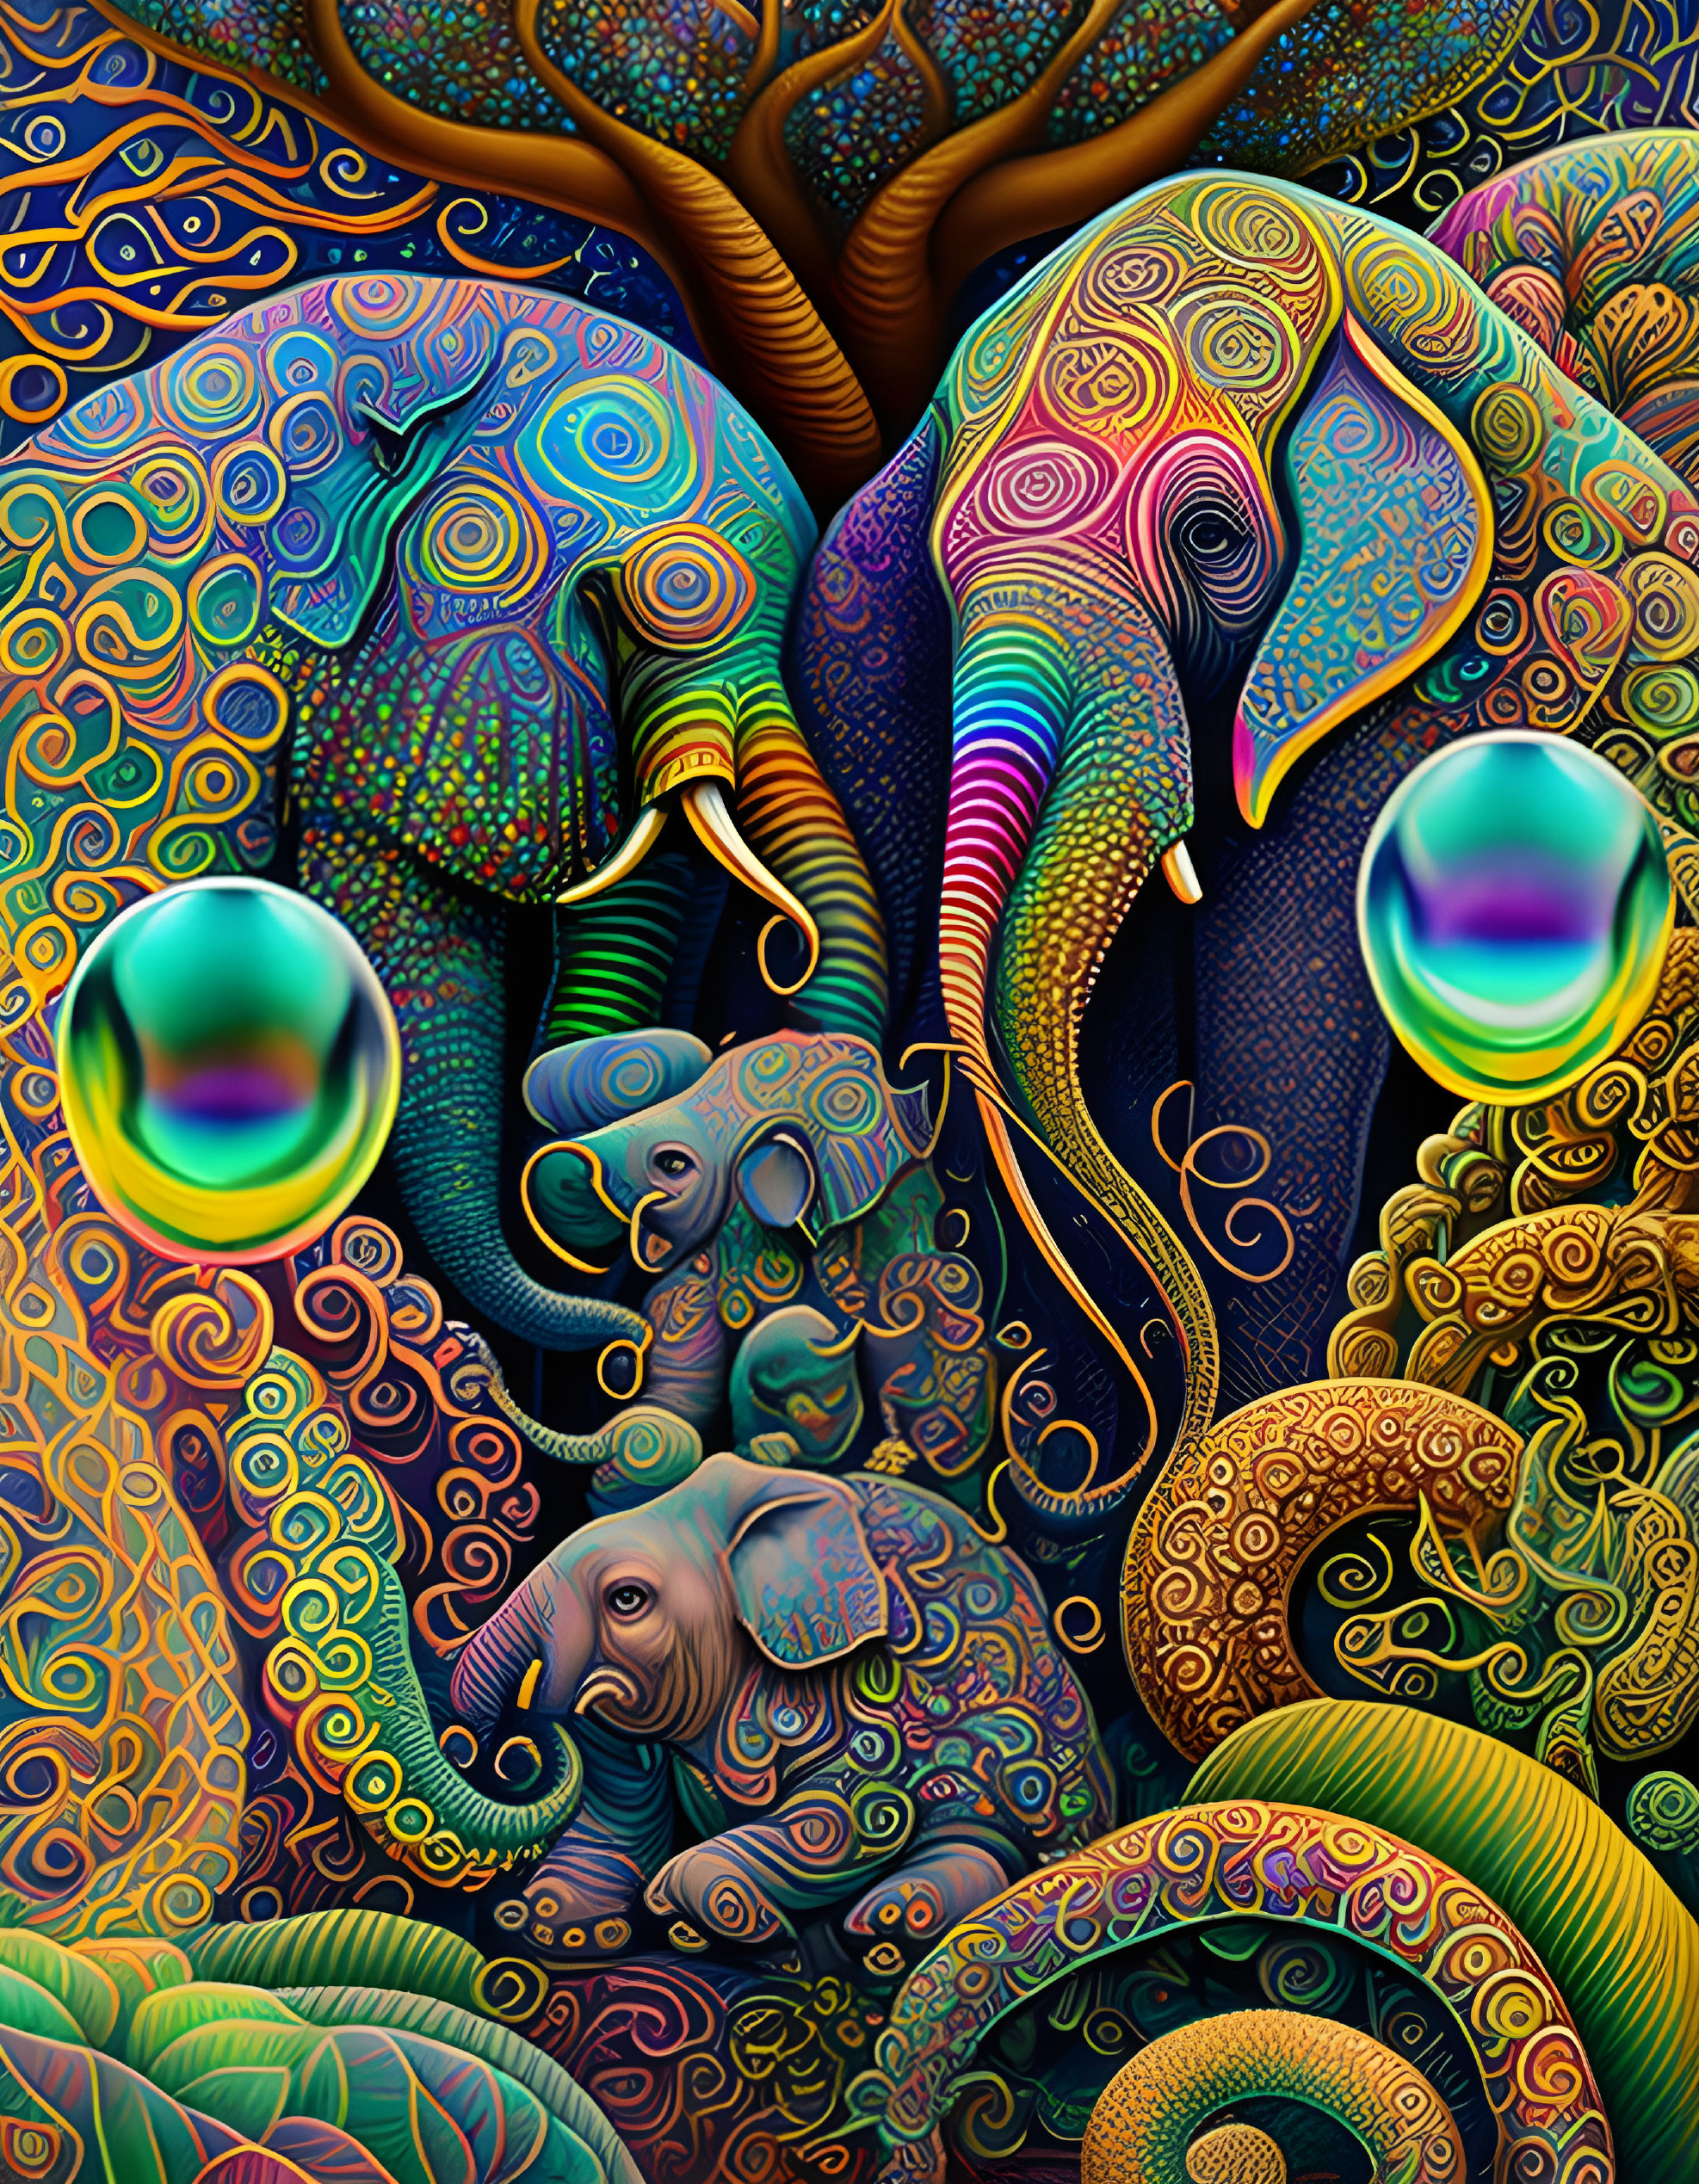 Octopus Elephants